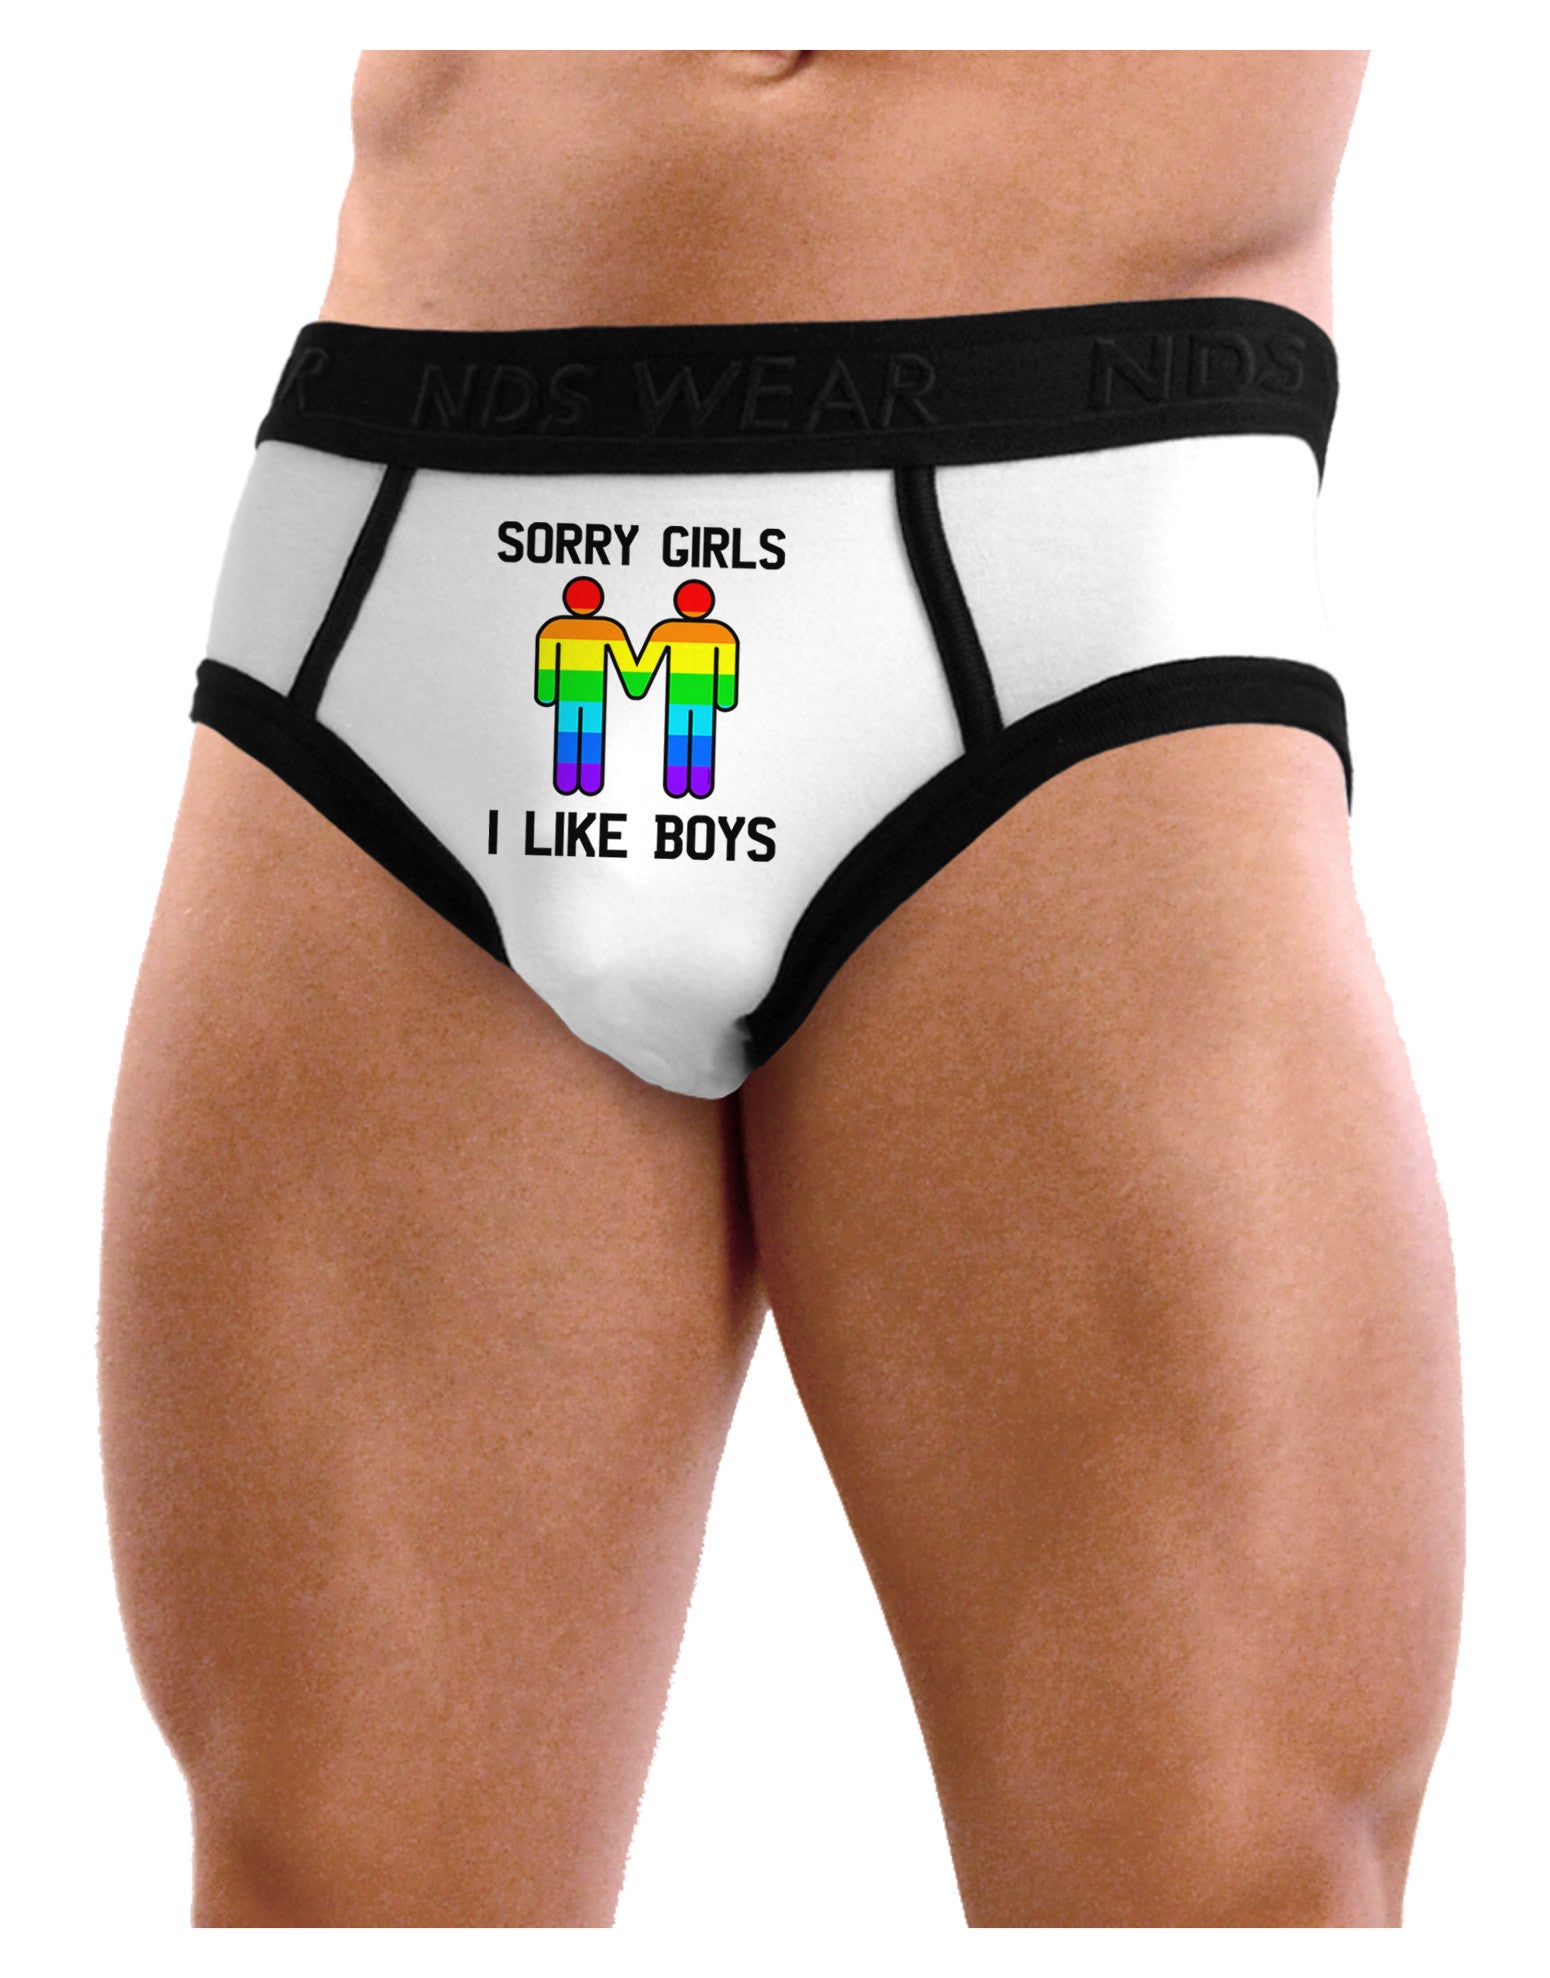 Sorry Girls I Like Boys Gay Rainbow Mens NDS Wear Briefs Underwear - Davson  Sales